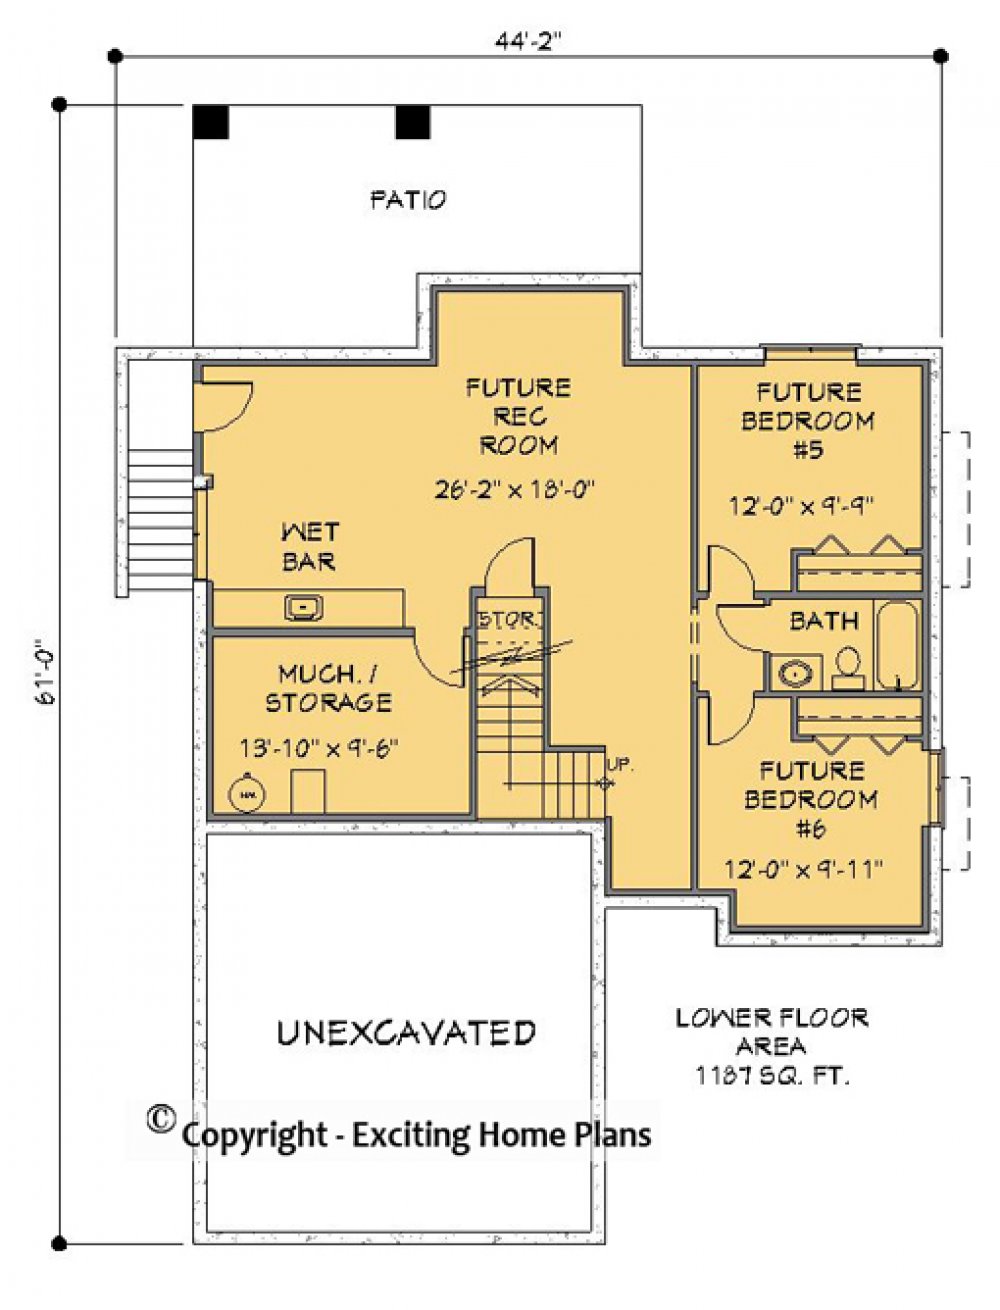 House Plan E1178-10 Lower Floor Plan